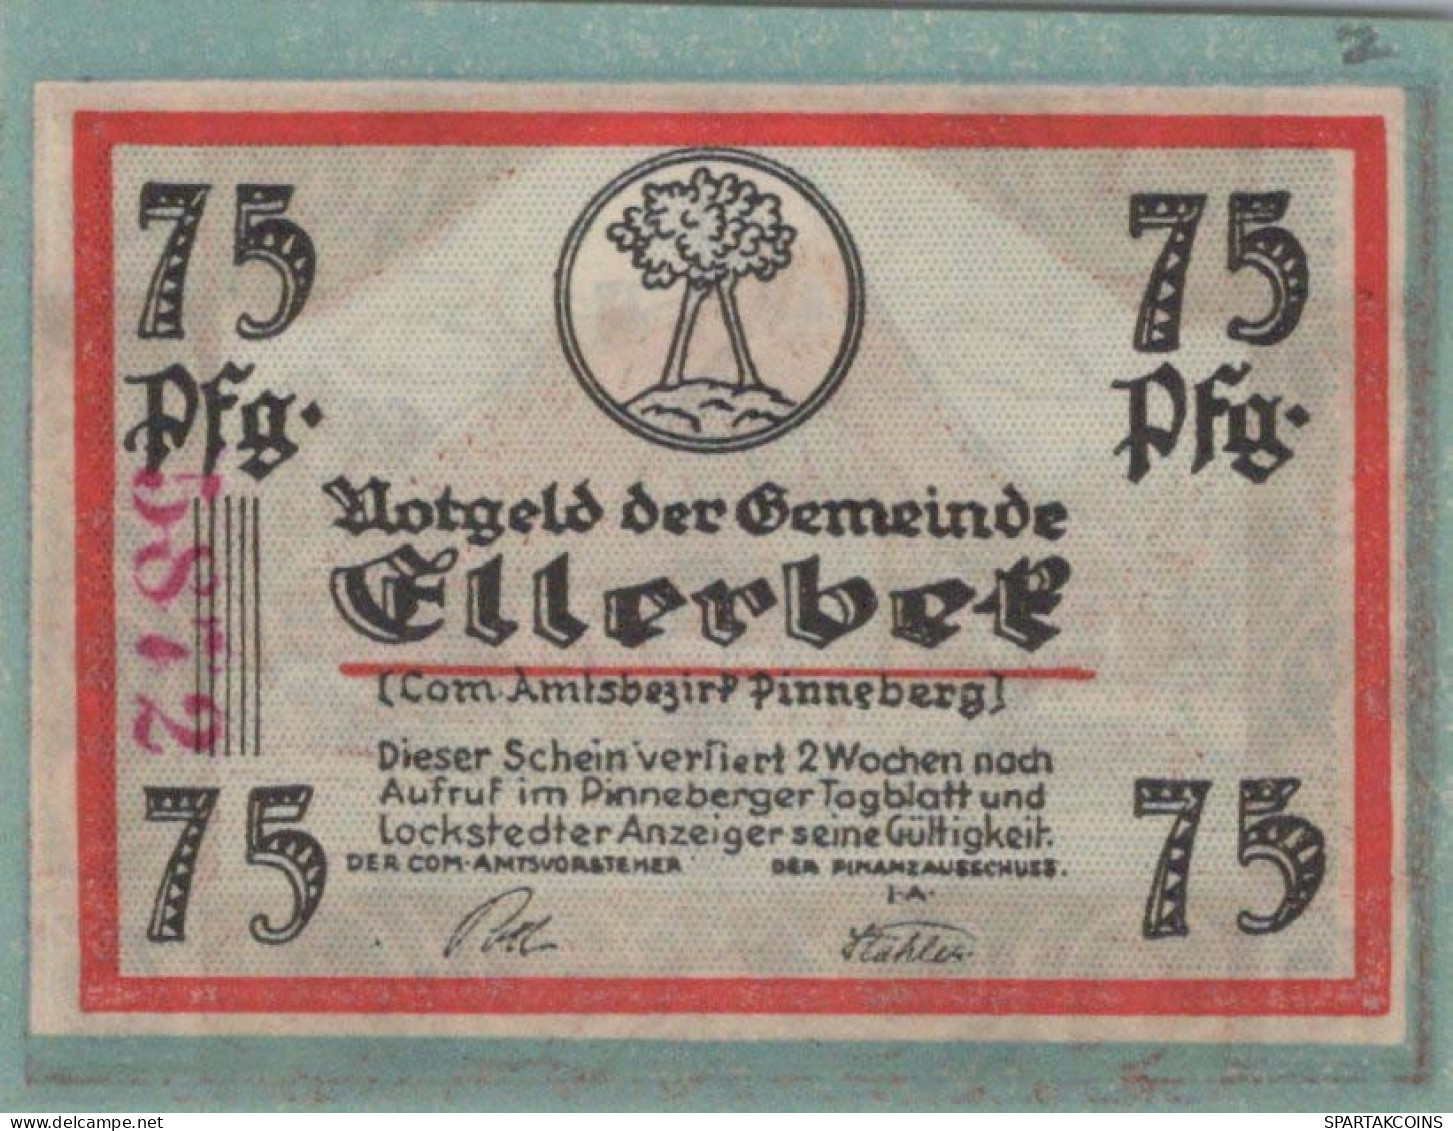 75 PFENNIG 1921 Stadt BREDSTEDT Schleswig-Holstein UNC DEUTSCHLAND #PB173 - [11] Local Banknote Issues